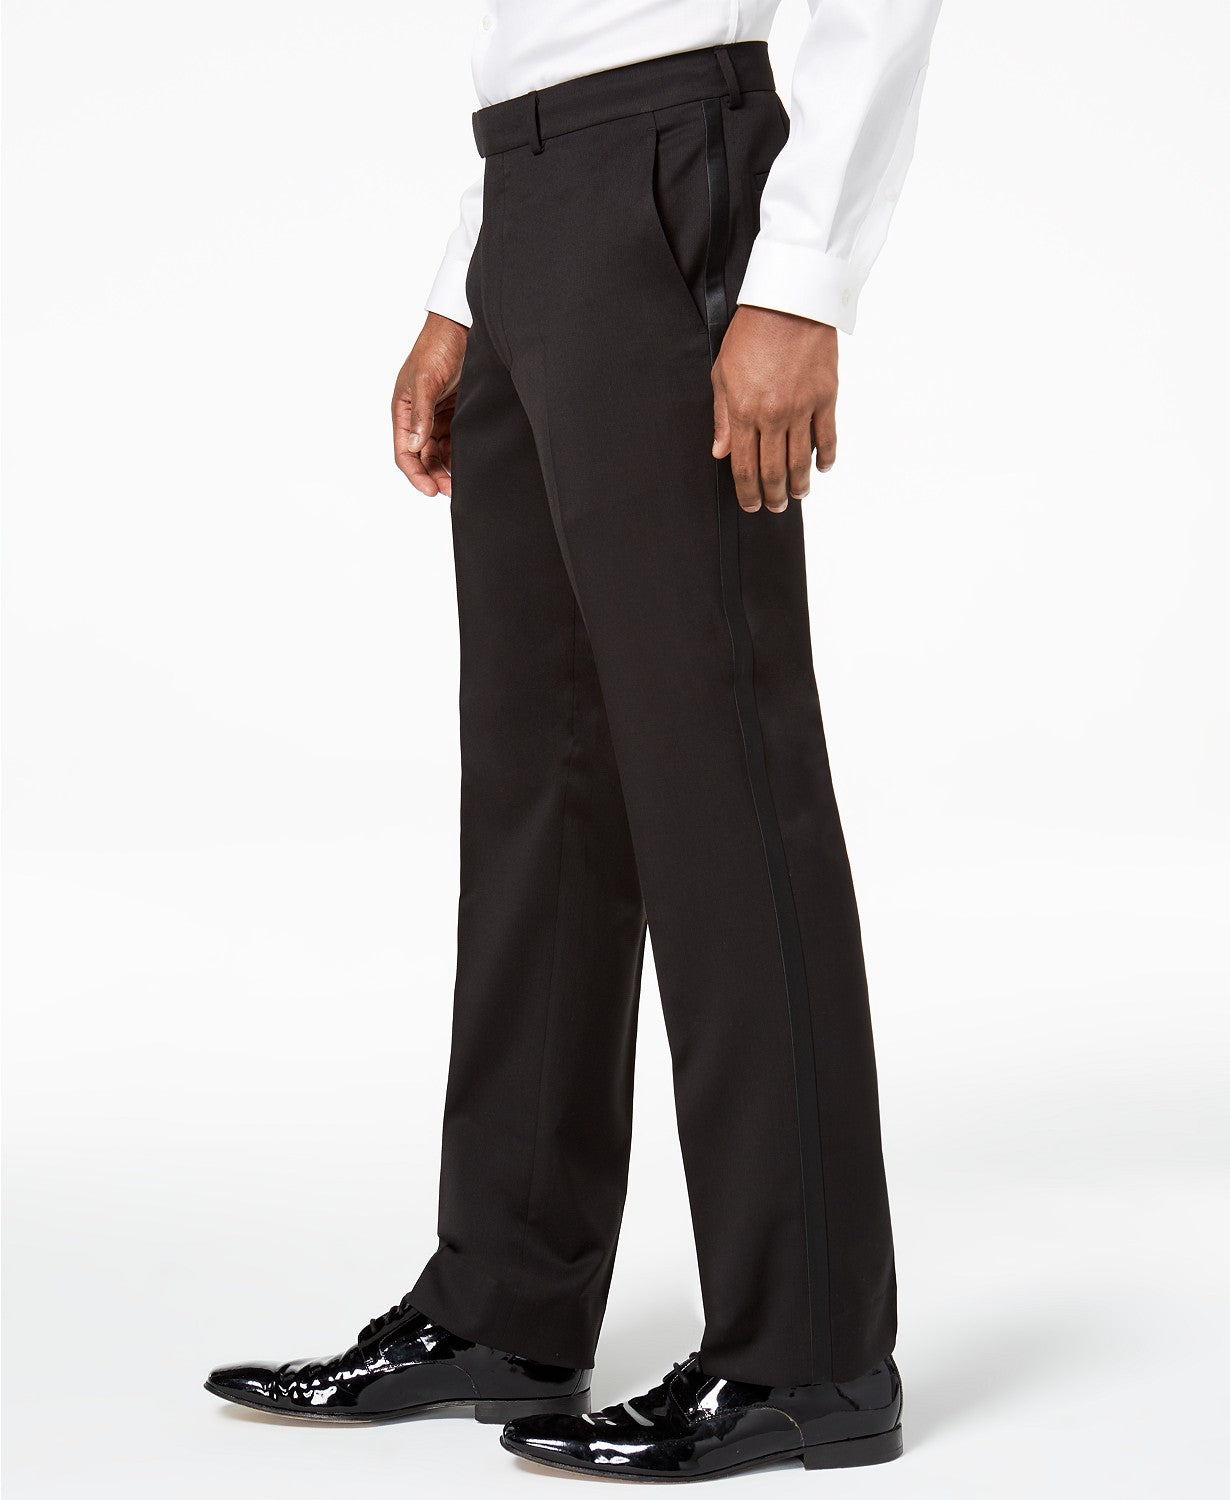 Kenneth Cole Mens Tuxedo Suit 50L / 45 x 32 Slim-Fit Black Notch Lapel Flat Pant